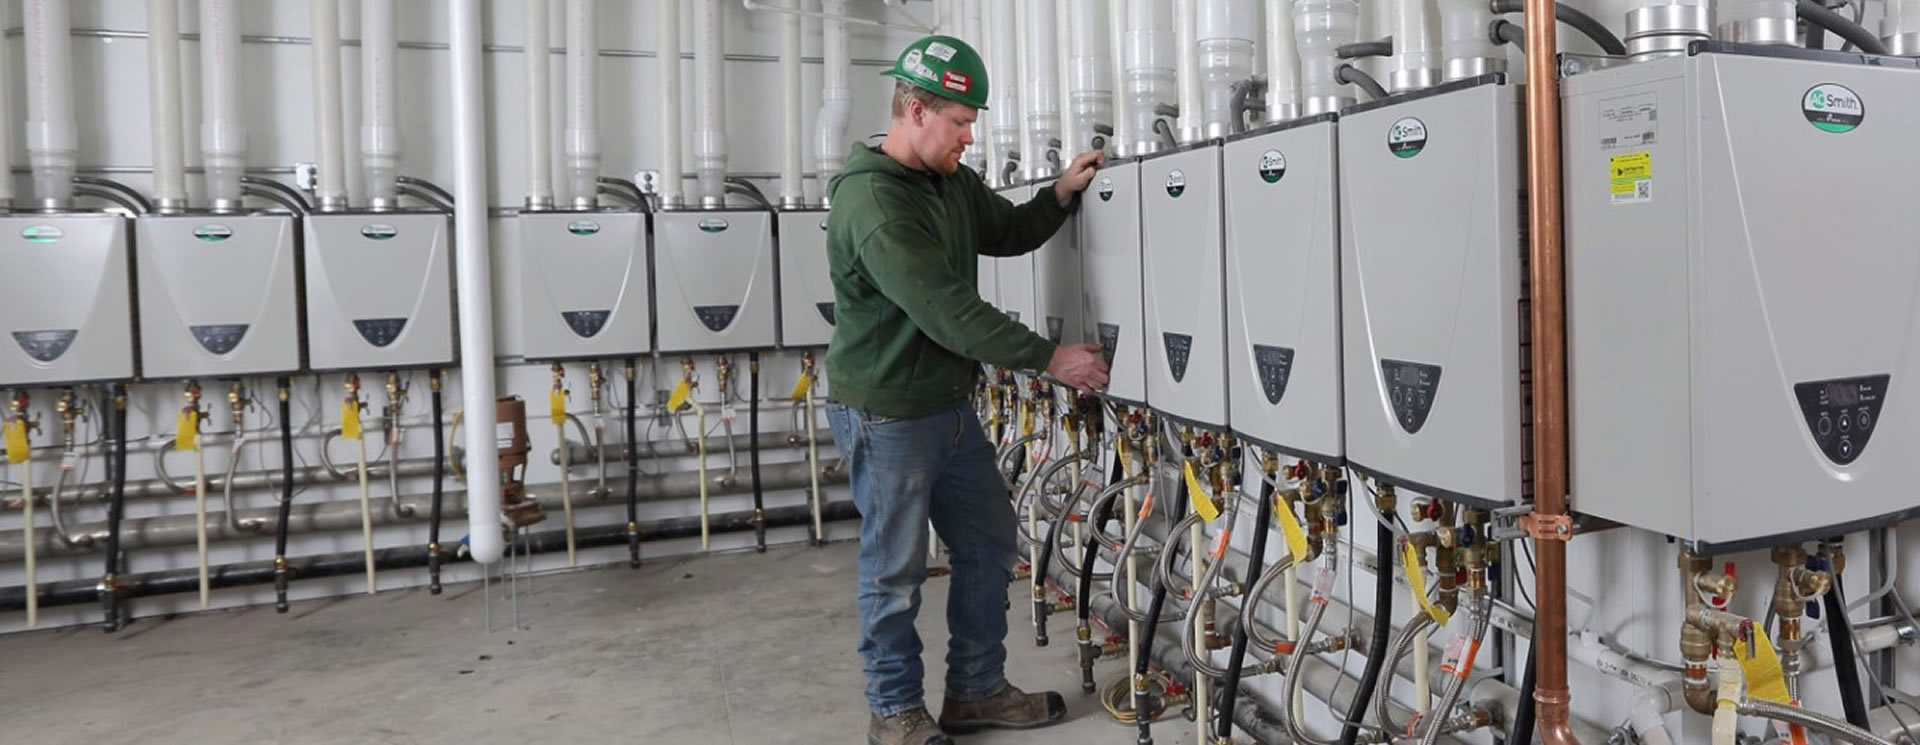 Water Heater Repair in Powder Springs, GA